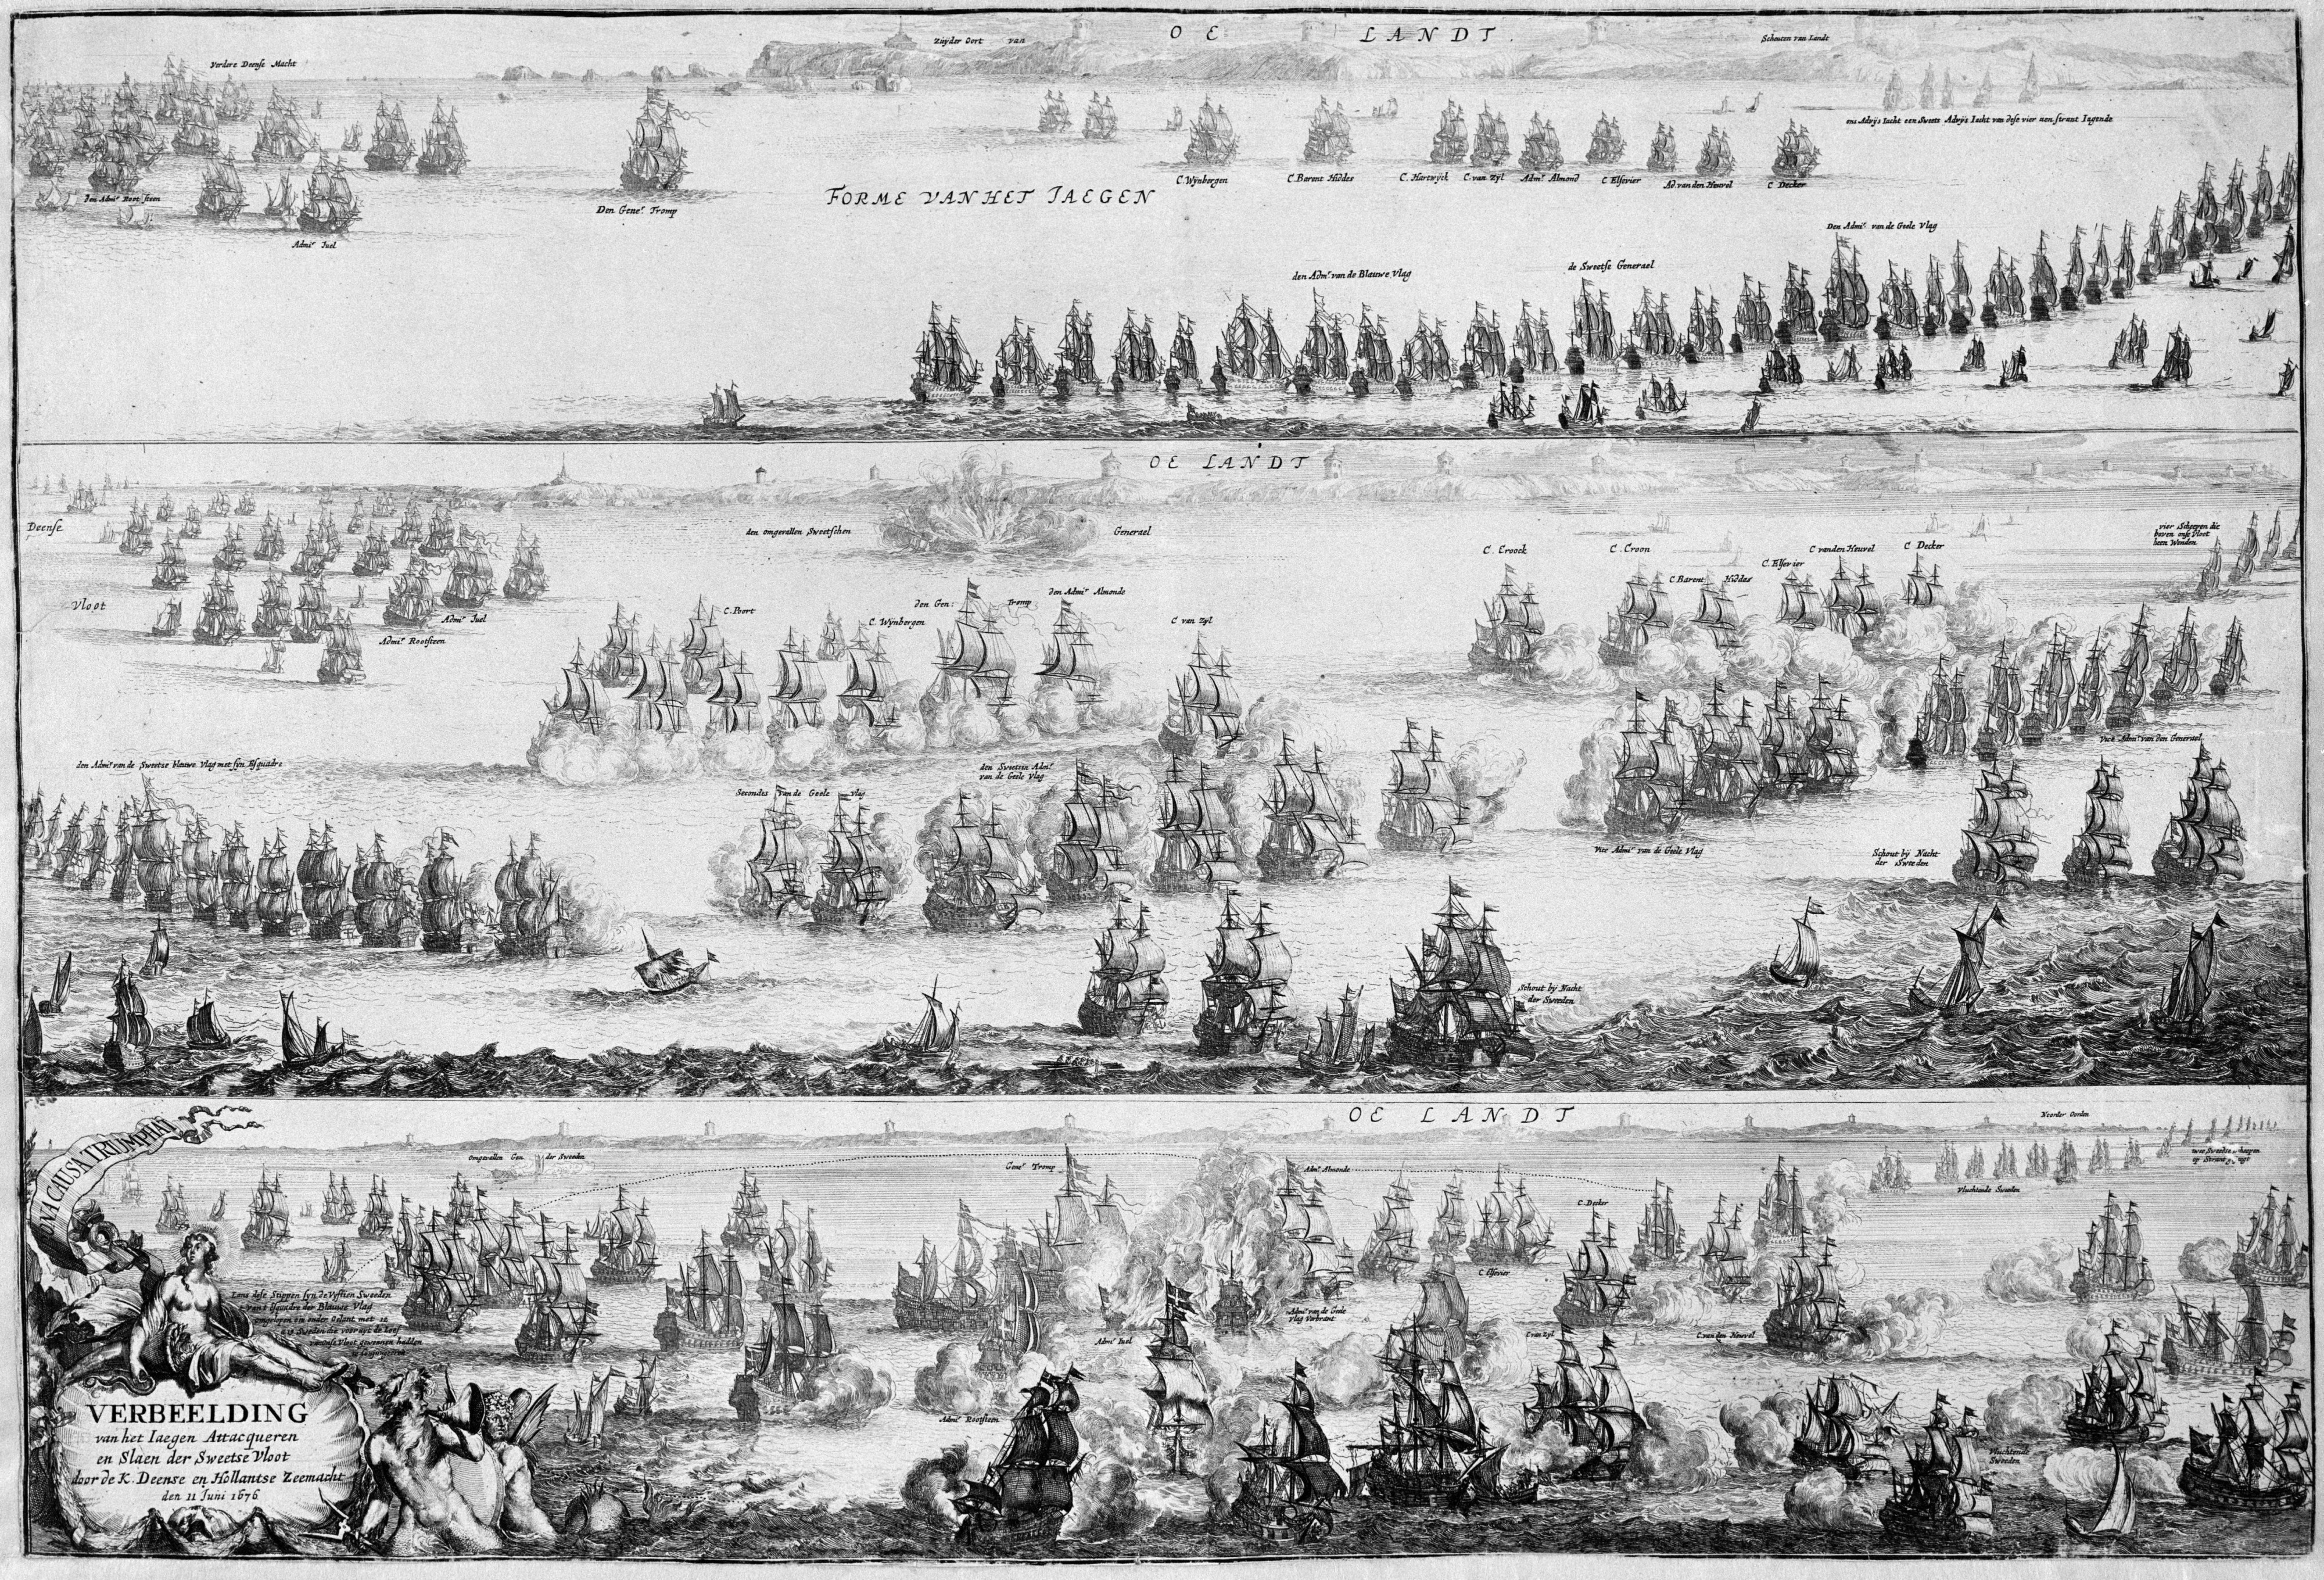 Slag bij Öland - Battle of Öland in 1676 (Romeyn de Hooghe)